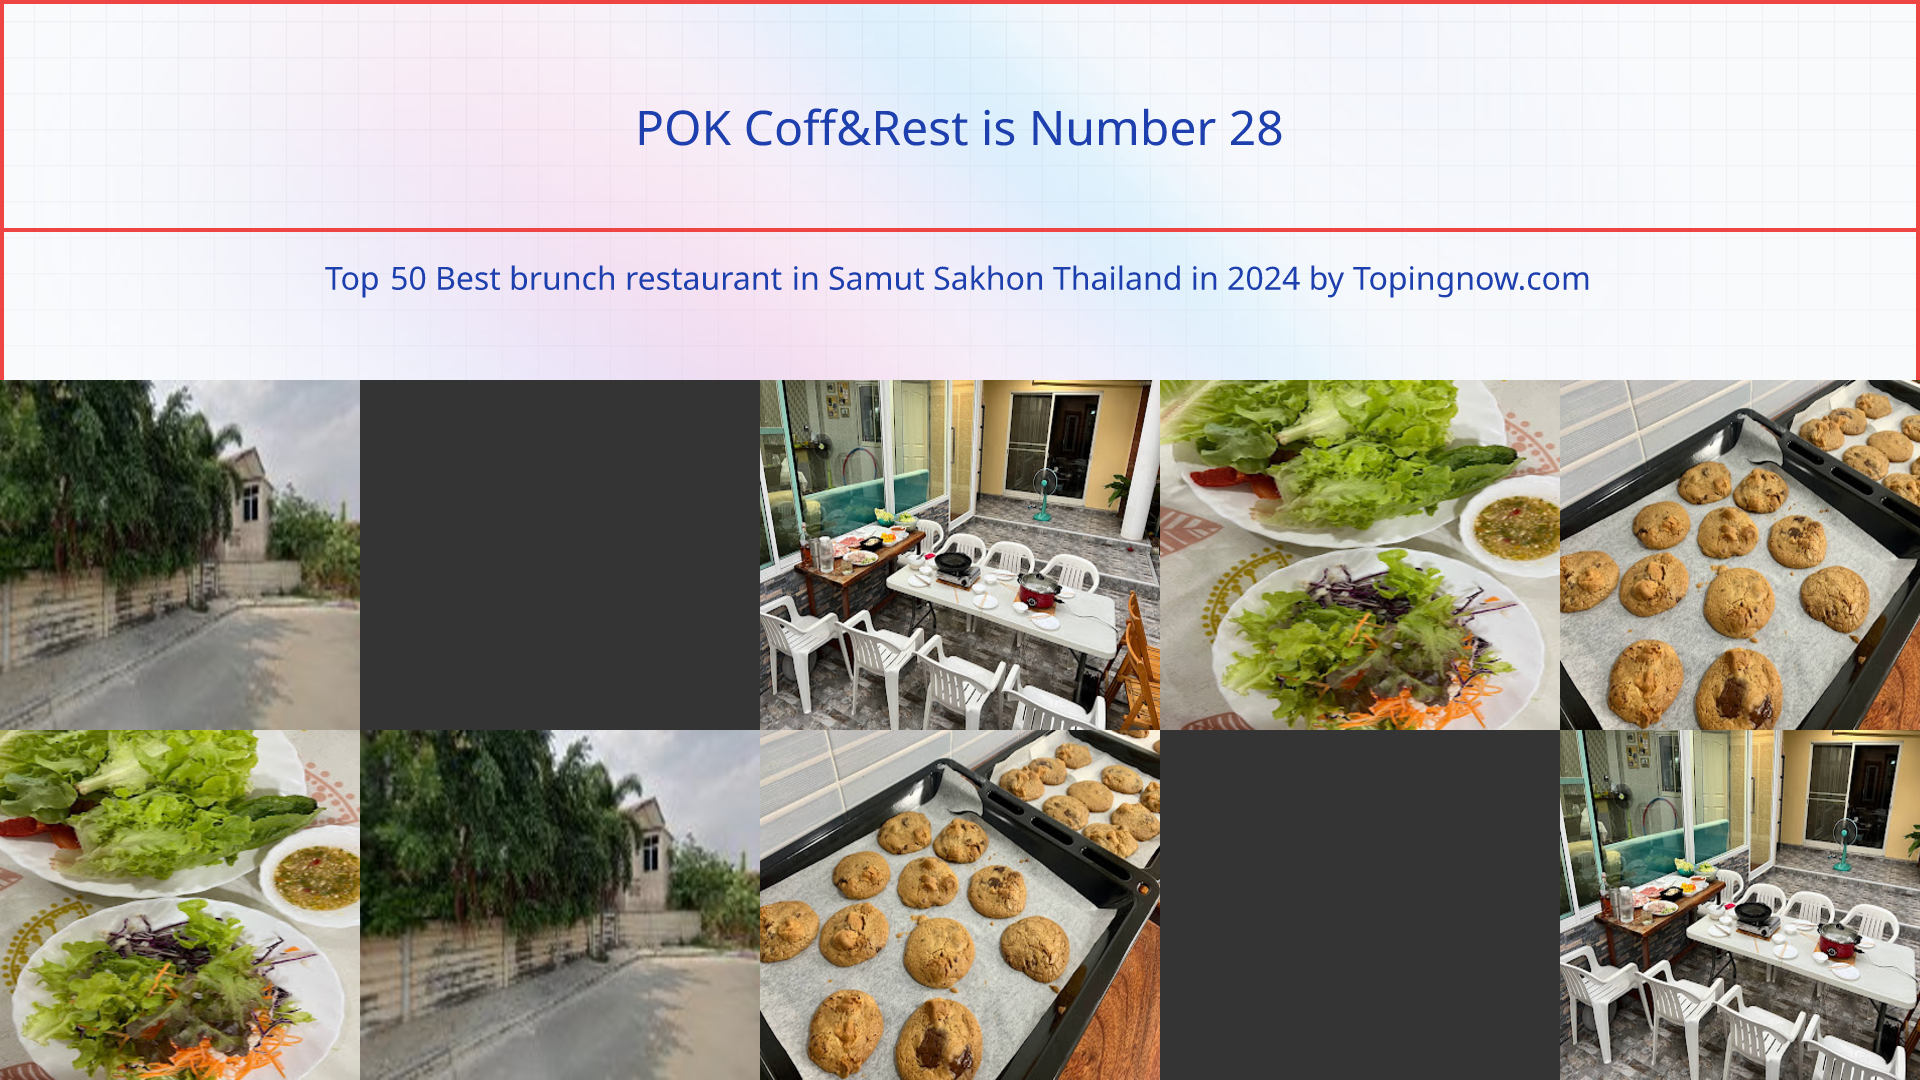 POK Coff&Rest: Top 50 Best brunch restaurant in Samut Sakhon Thailand in 2024